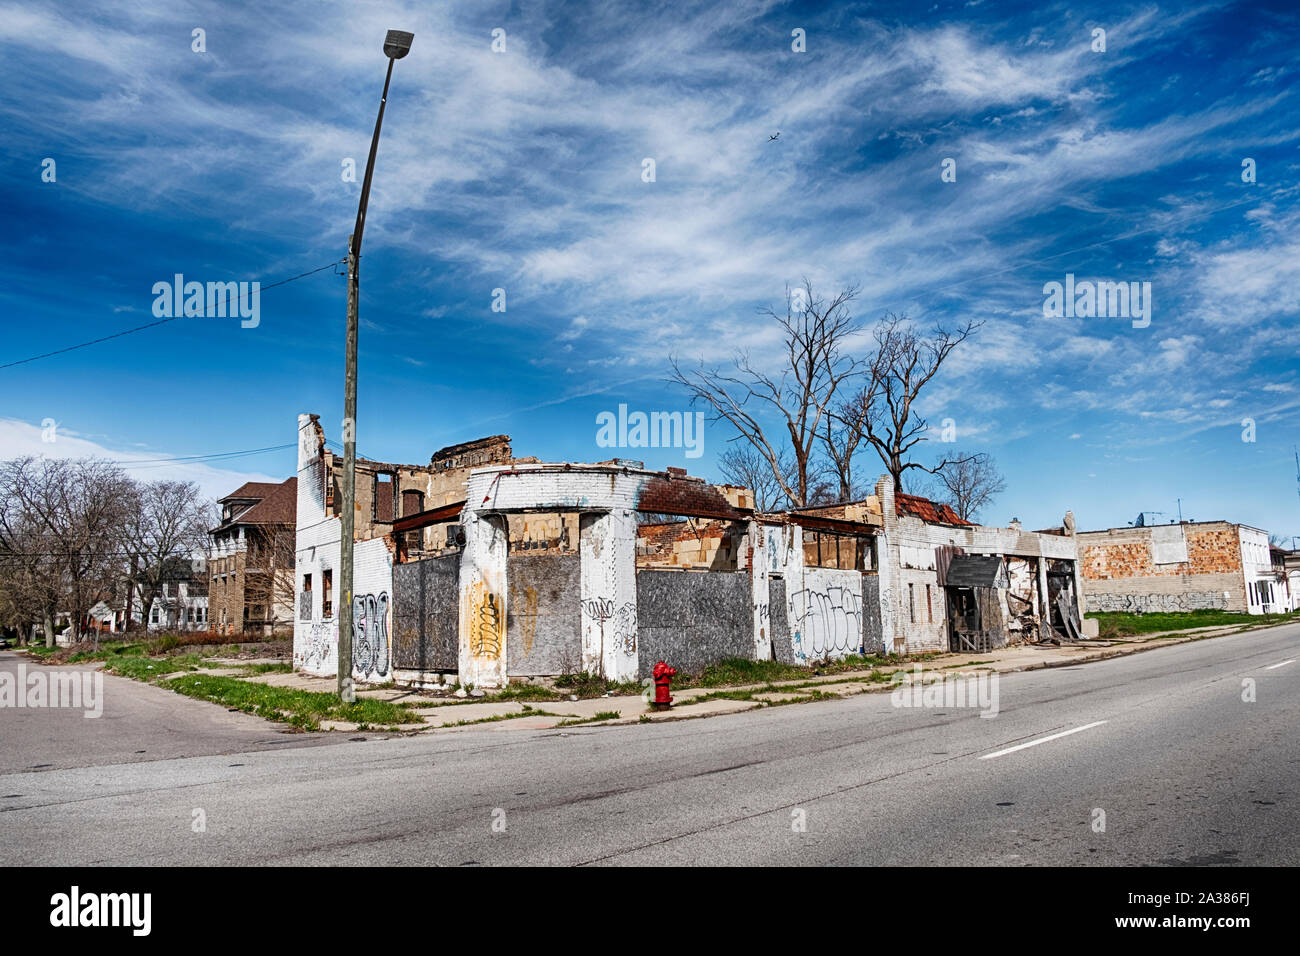 DETROIT, Michigan - Aprile 27, 2019: un corner store su Hamilton Avenue a Detroit è simbolico di degrado urbano. Foto Stock